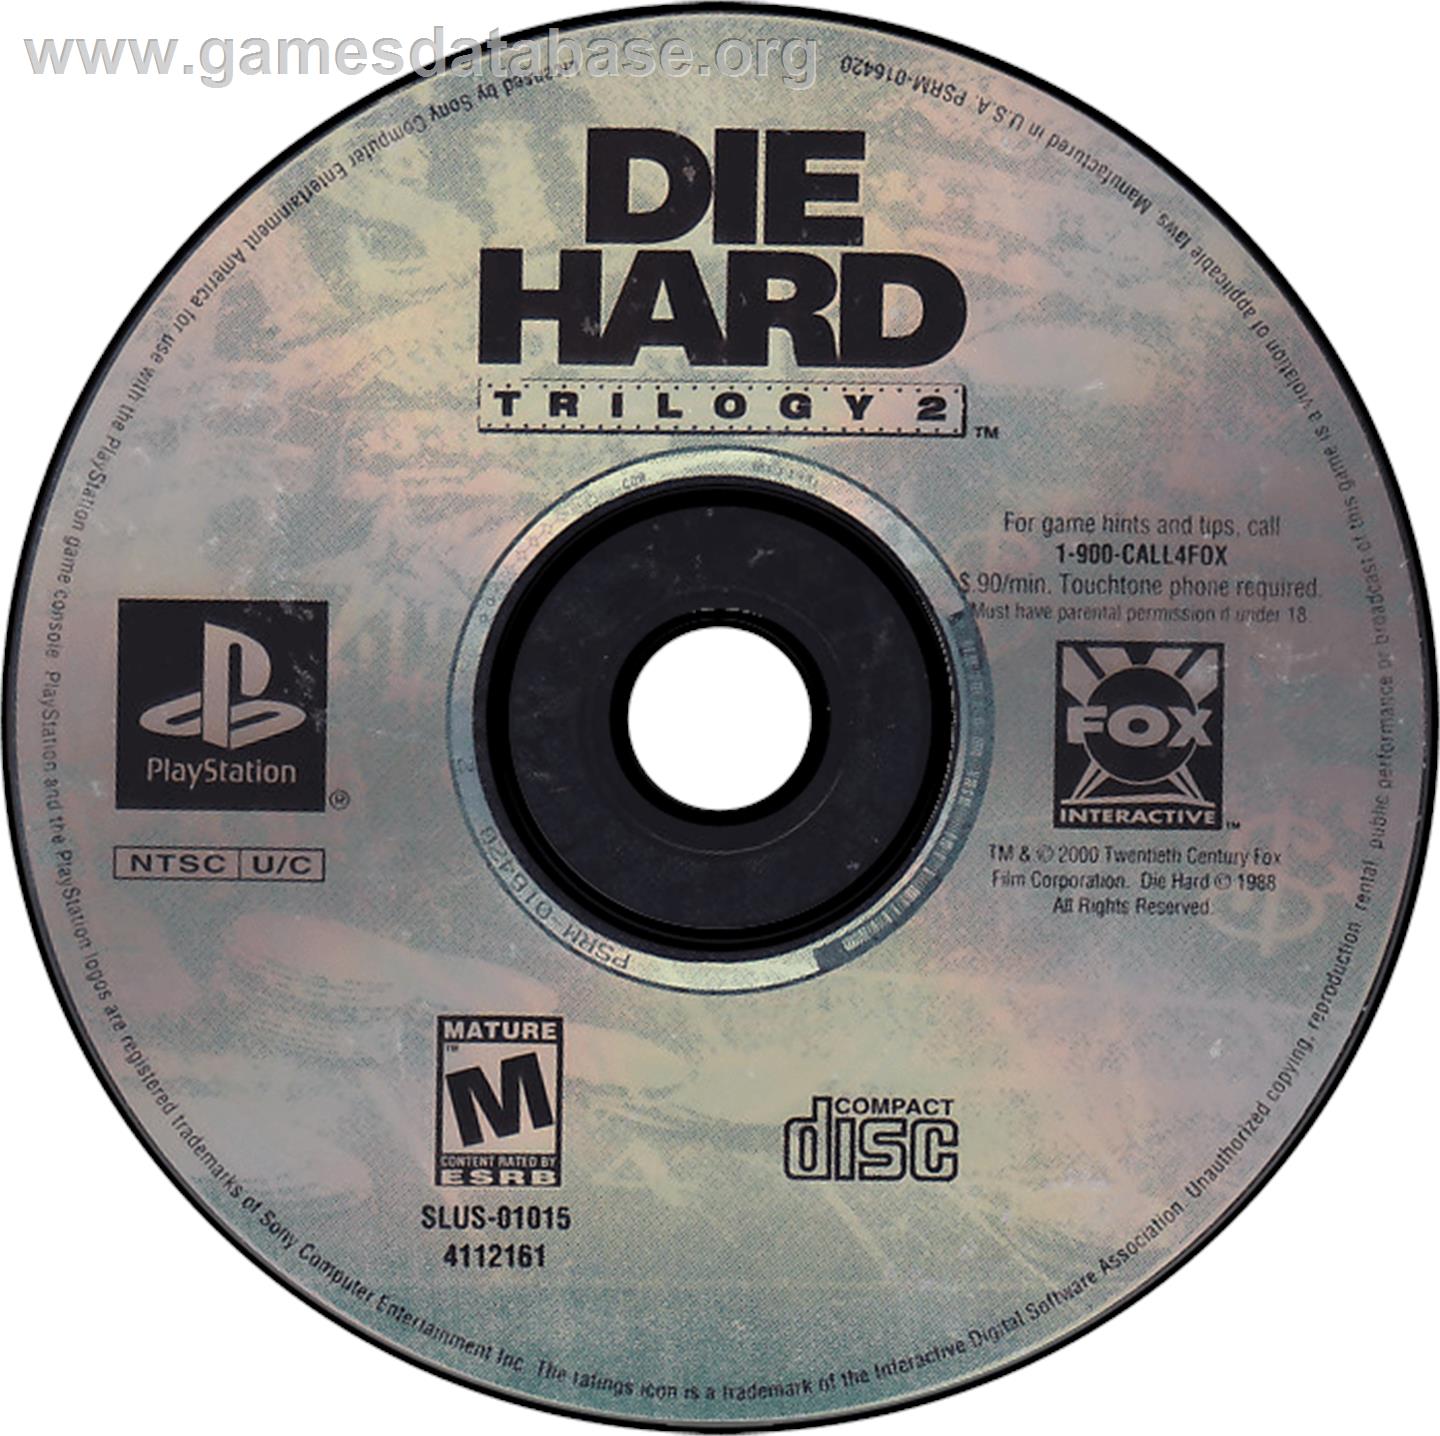 Die Hard Trilogy 2: Viva Las Vegas - Sony Playstation - Artwork - Disc